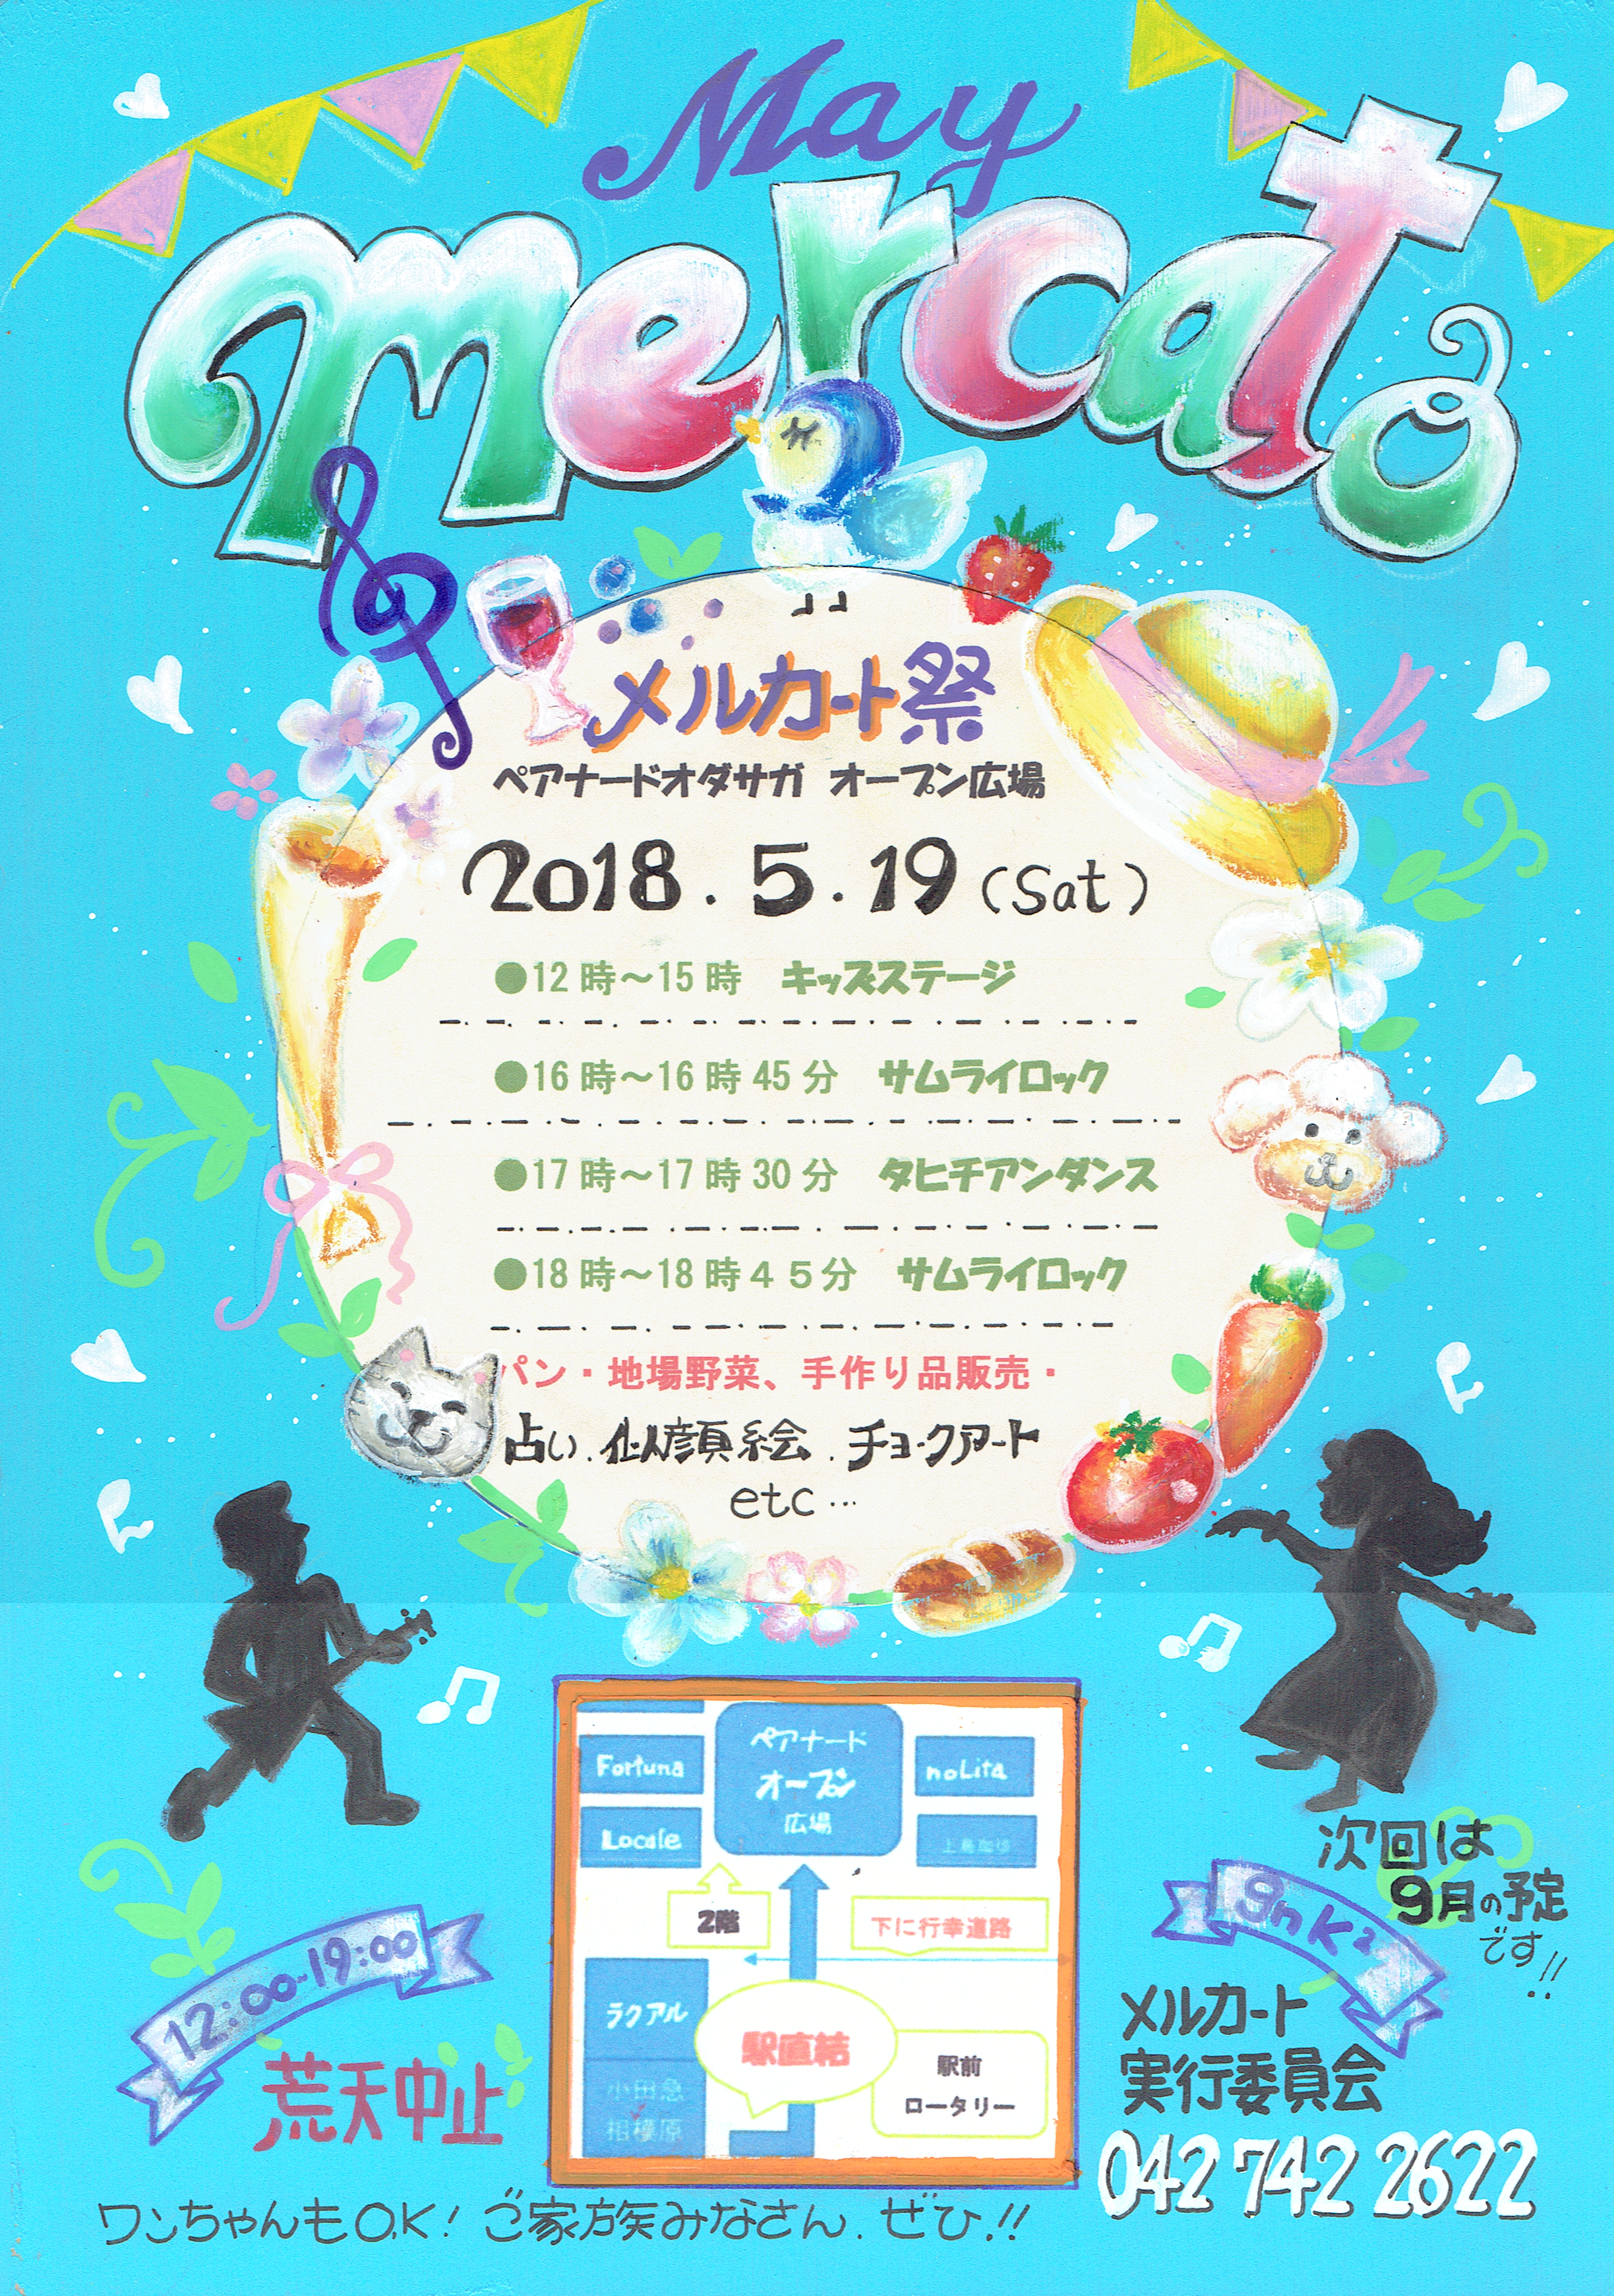 2018年5月19日(土)小田急相模原メルカート祭りへ出店します